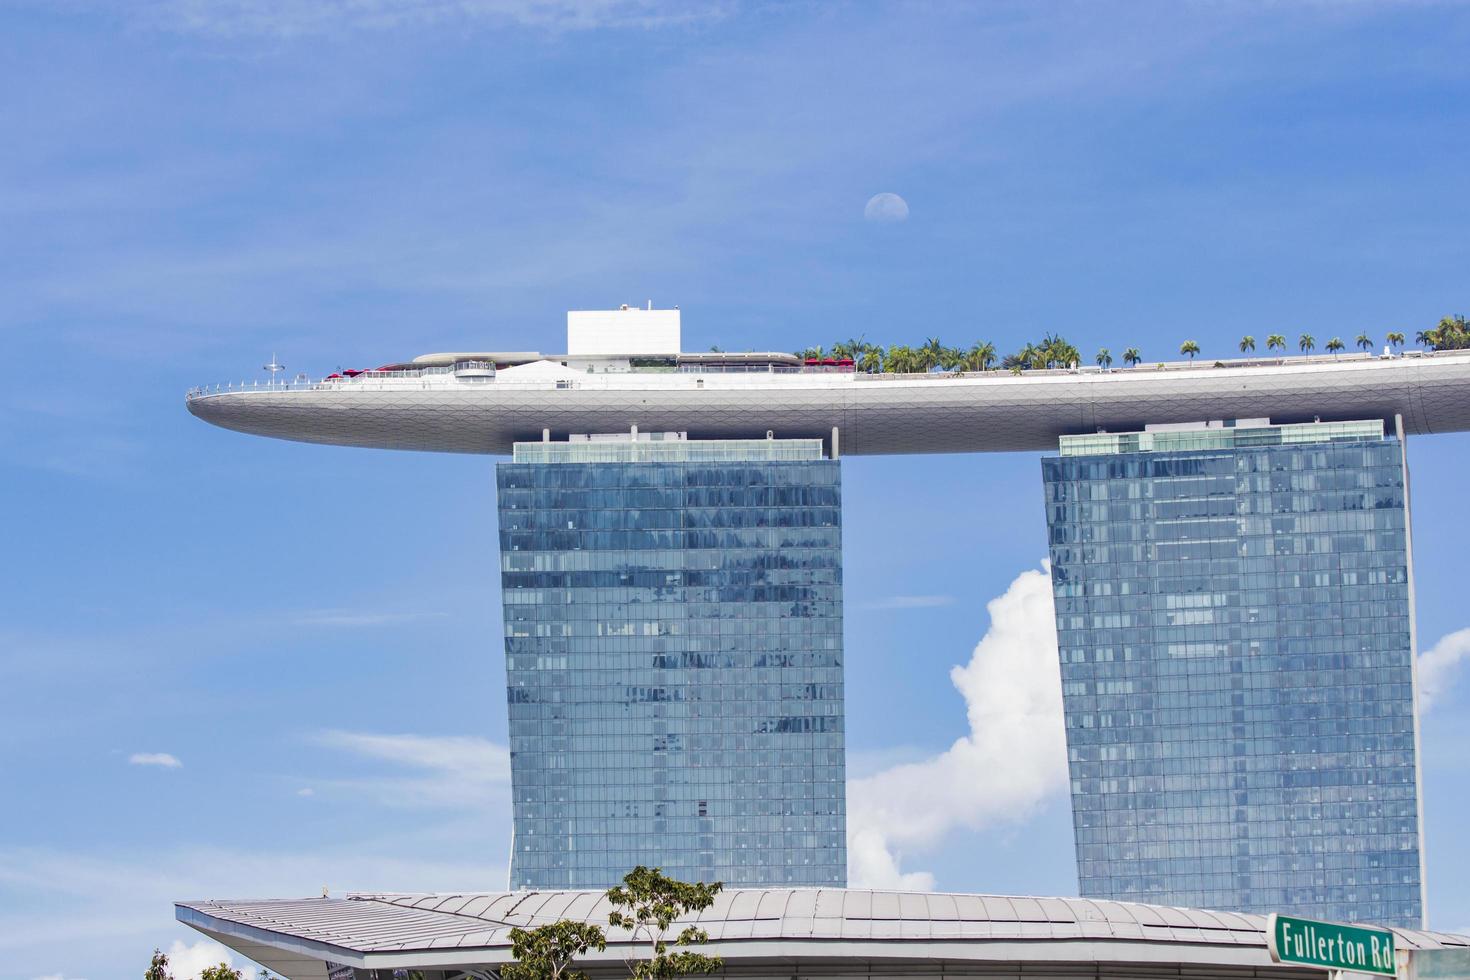 Singapur, 6 de agosto de 2014 - Ver en el hotel Marina Bay Sands en Singapur. es el segundo edificio más caro del mundo, con 5.5 mil millones de dólares. foto